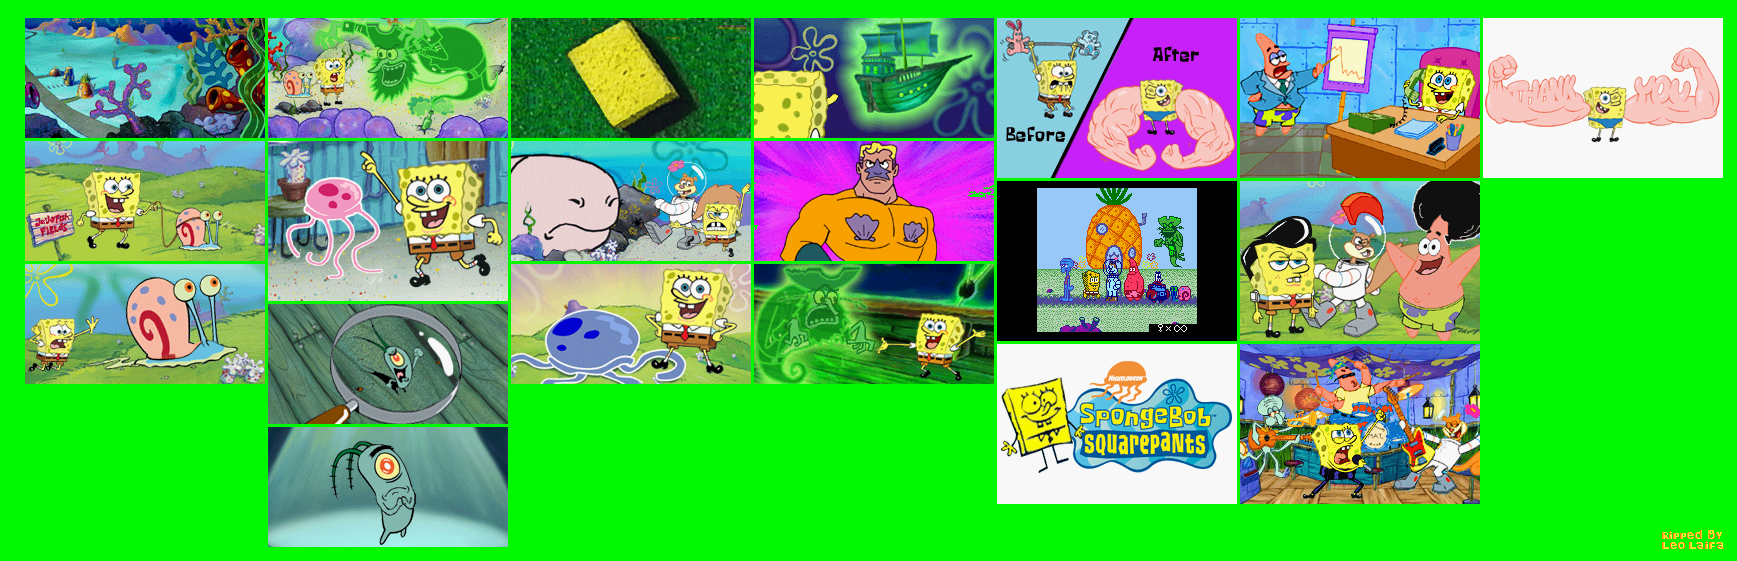 SpongeBob SquarePants: Revenge of the Flying Dutchman - Cutscenes